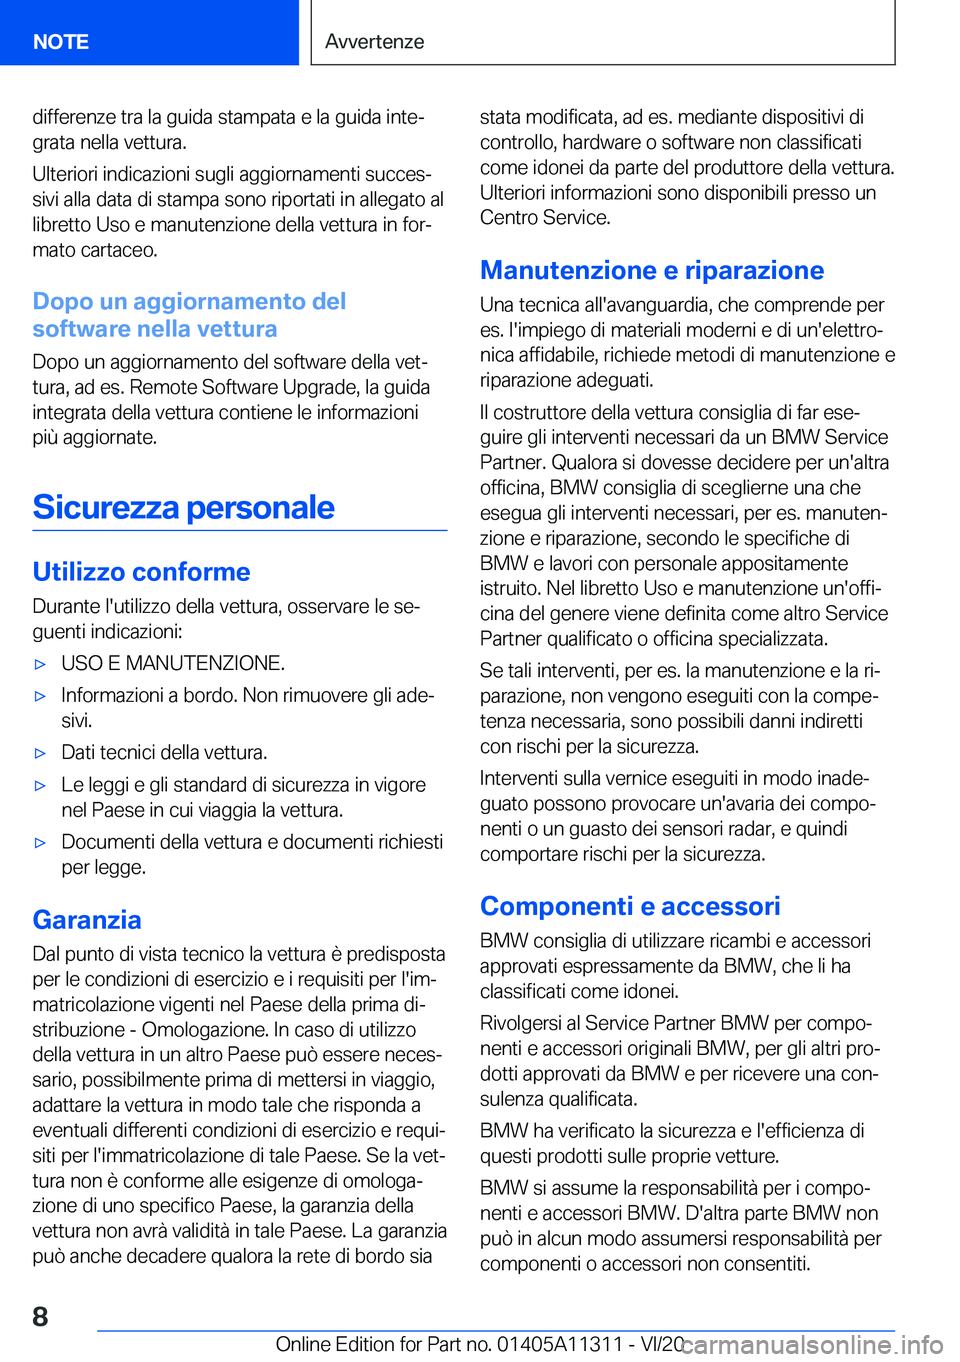 BMW 5 SERIES 2021  Libretti Di Uso E manutenzione (in Italian) �d�i�f�f�e�r�e�n�z�e��t�r�a��l�a��g�u�i�d�a��s�t�a�m�p�a�t�a��e��l�a��g�u�i�d�a��i�n�t�eª�g�r�a�t�a��n�e�l�l�a��v�e�t�t�u�r�a�.
�U�l�t�e�r�i�o�r�i��i�n�d�i�c�a�z�i�o�n�i��s�u�g�l�i��a�g